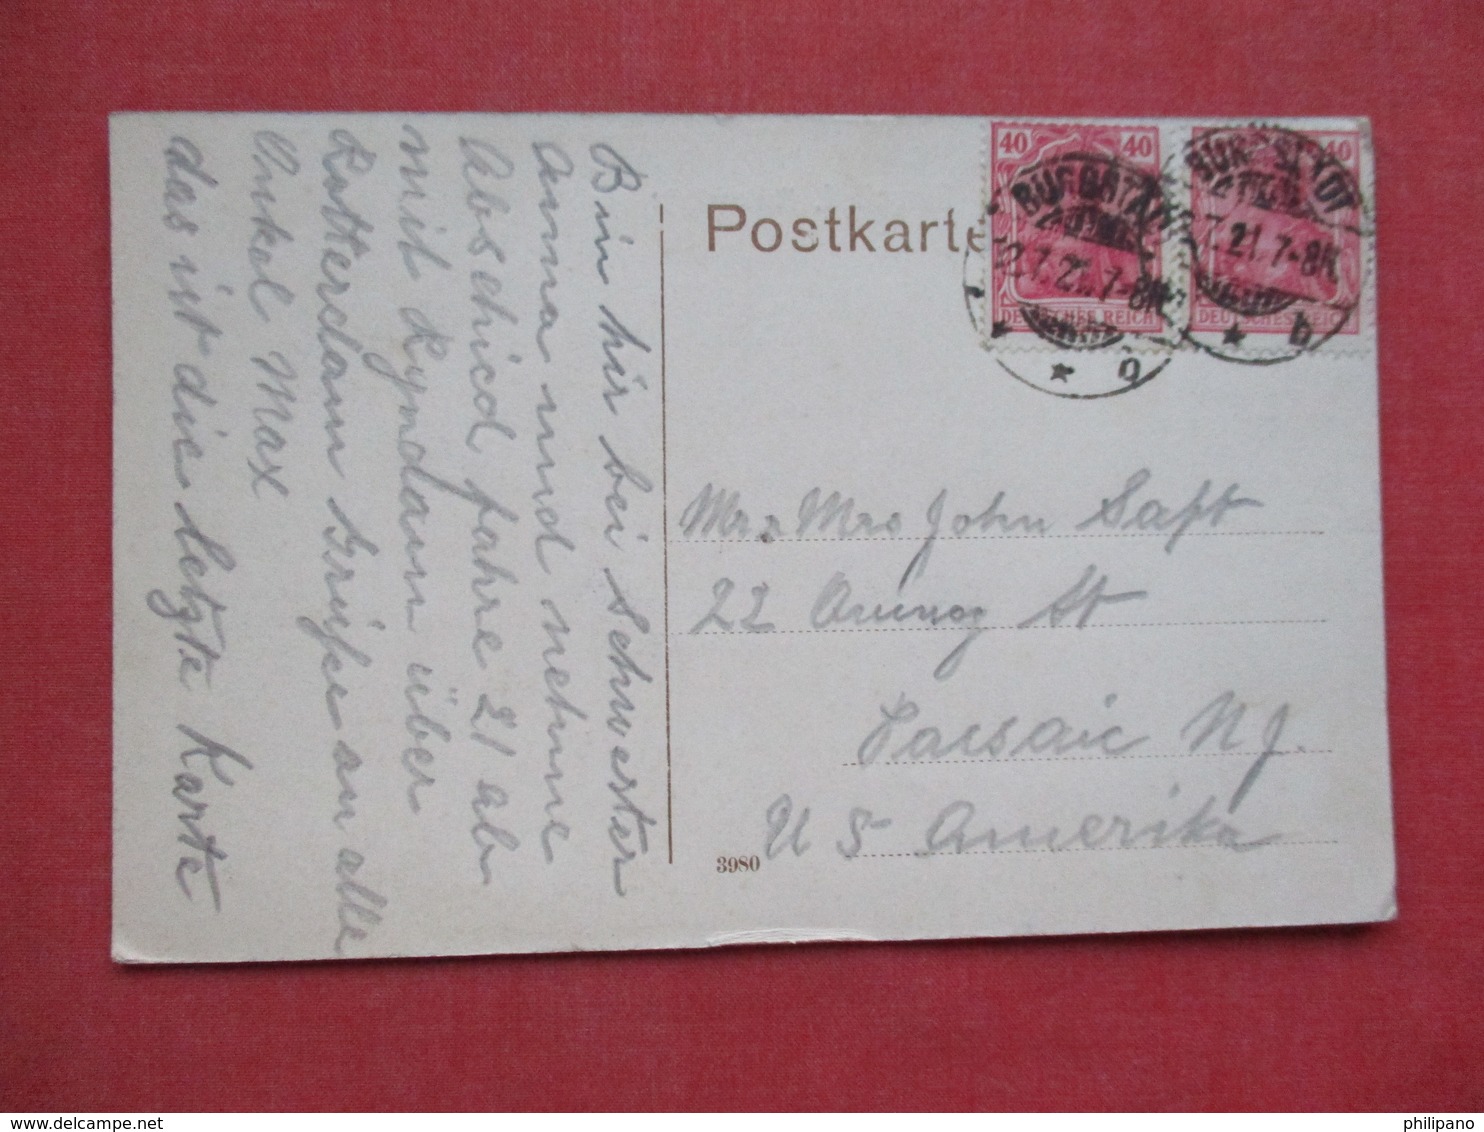 Germany > Saxony > Burgstaedt    Has Stamps & Cancel   -ref 3411 - Burgstaedt